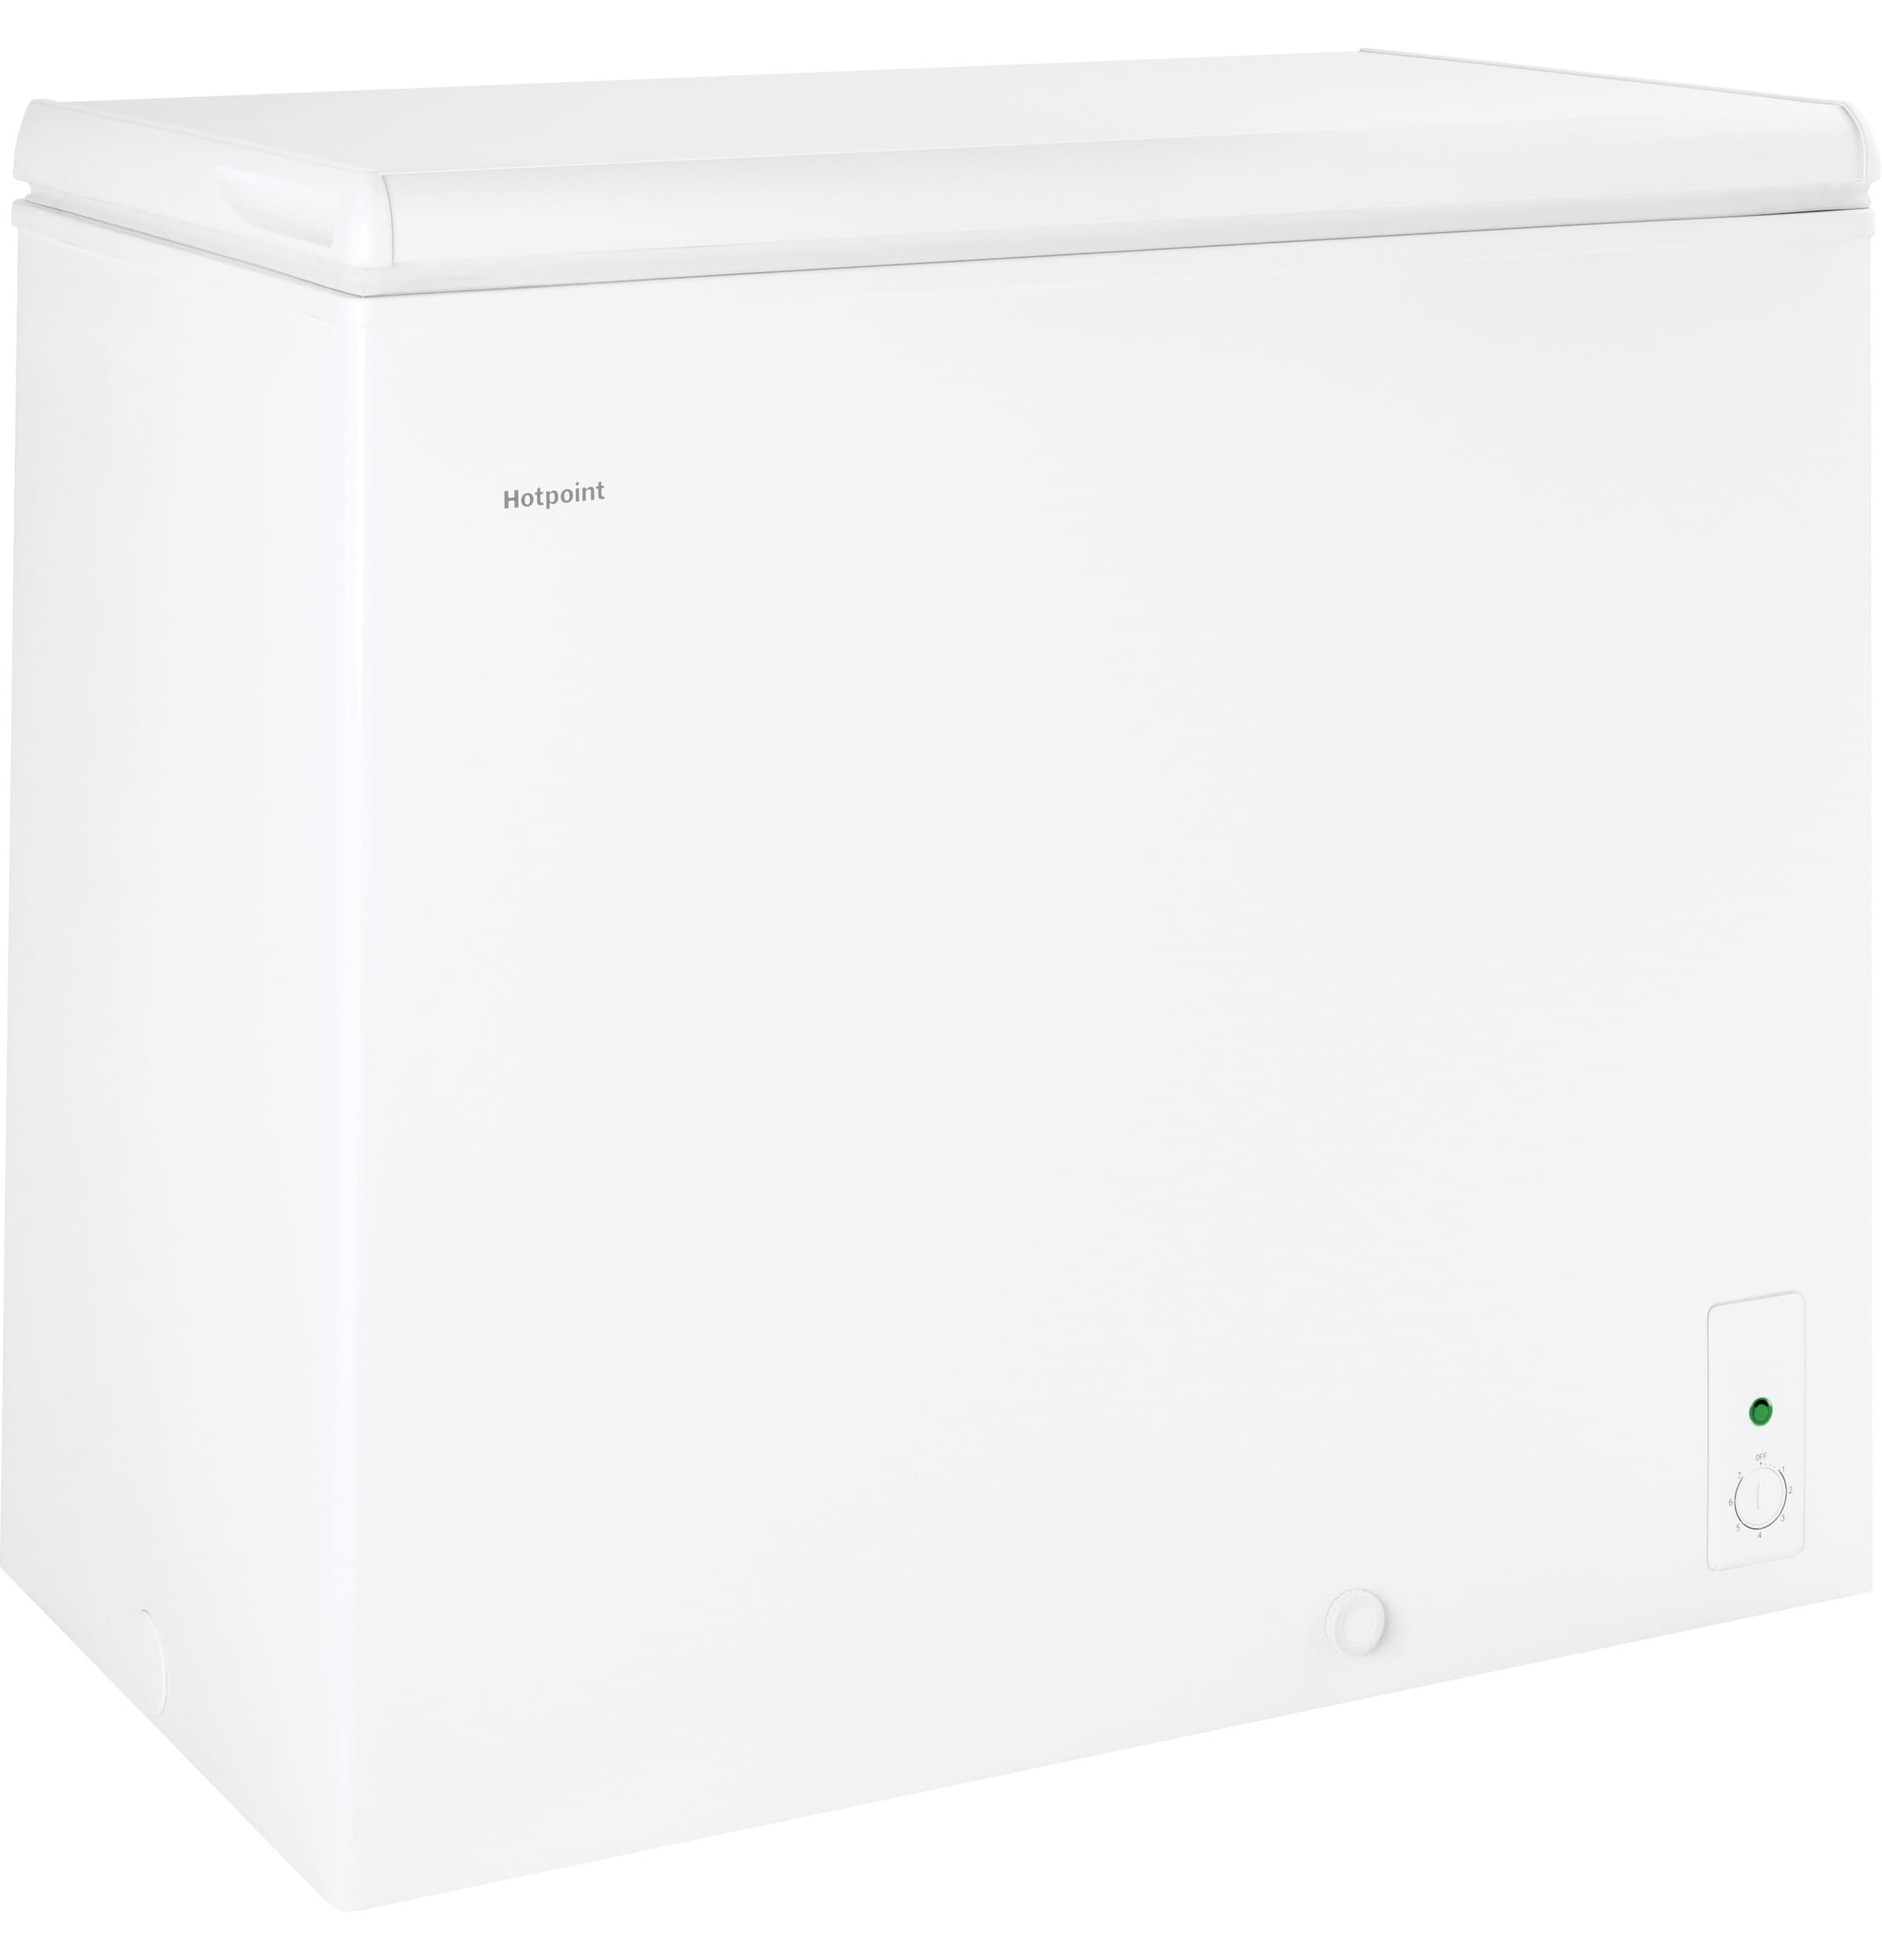 Chest freezer 3.5 cu ft - appliances - by owner - sale - craigslist